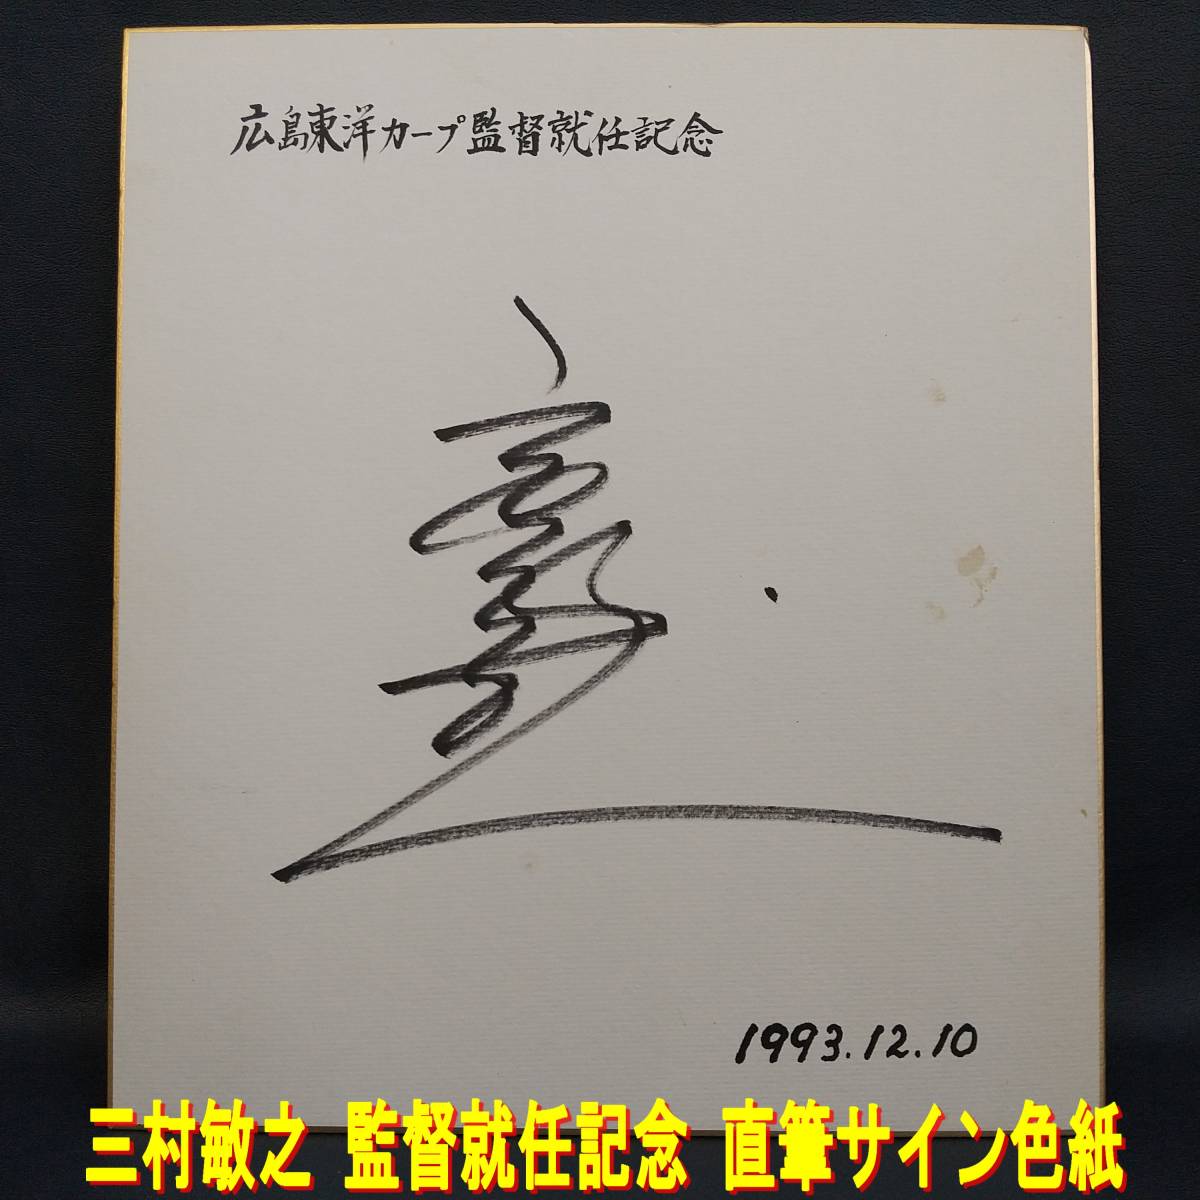 E0CT0133/Hiroshima Toyo Carp/Toshiyuki Mimura/Autografiado/Firmado/Firmado/Conmemorativo/1993.12.10/CARP, béisbol, Recuerdo, Mercancía relacionada, firmar